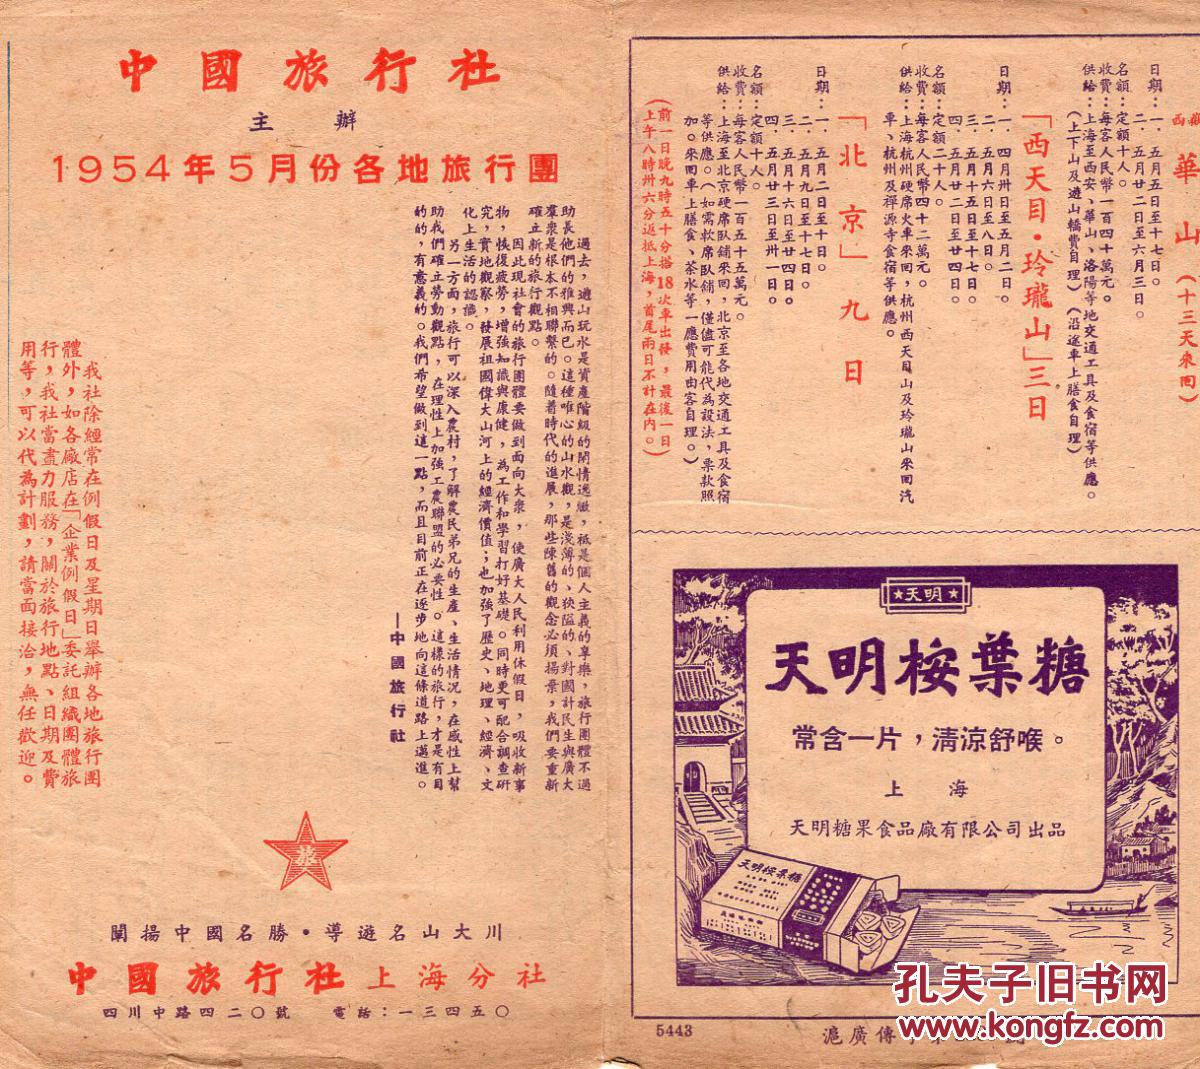 【图】54年5月中国旅行社上海分社版《54年5